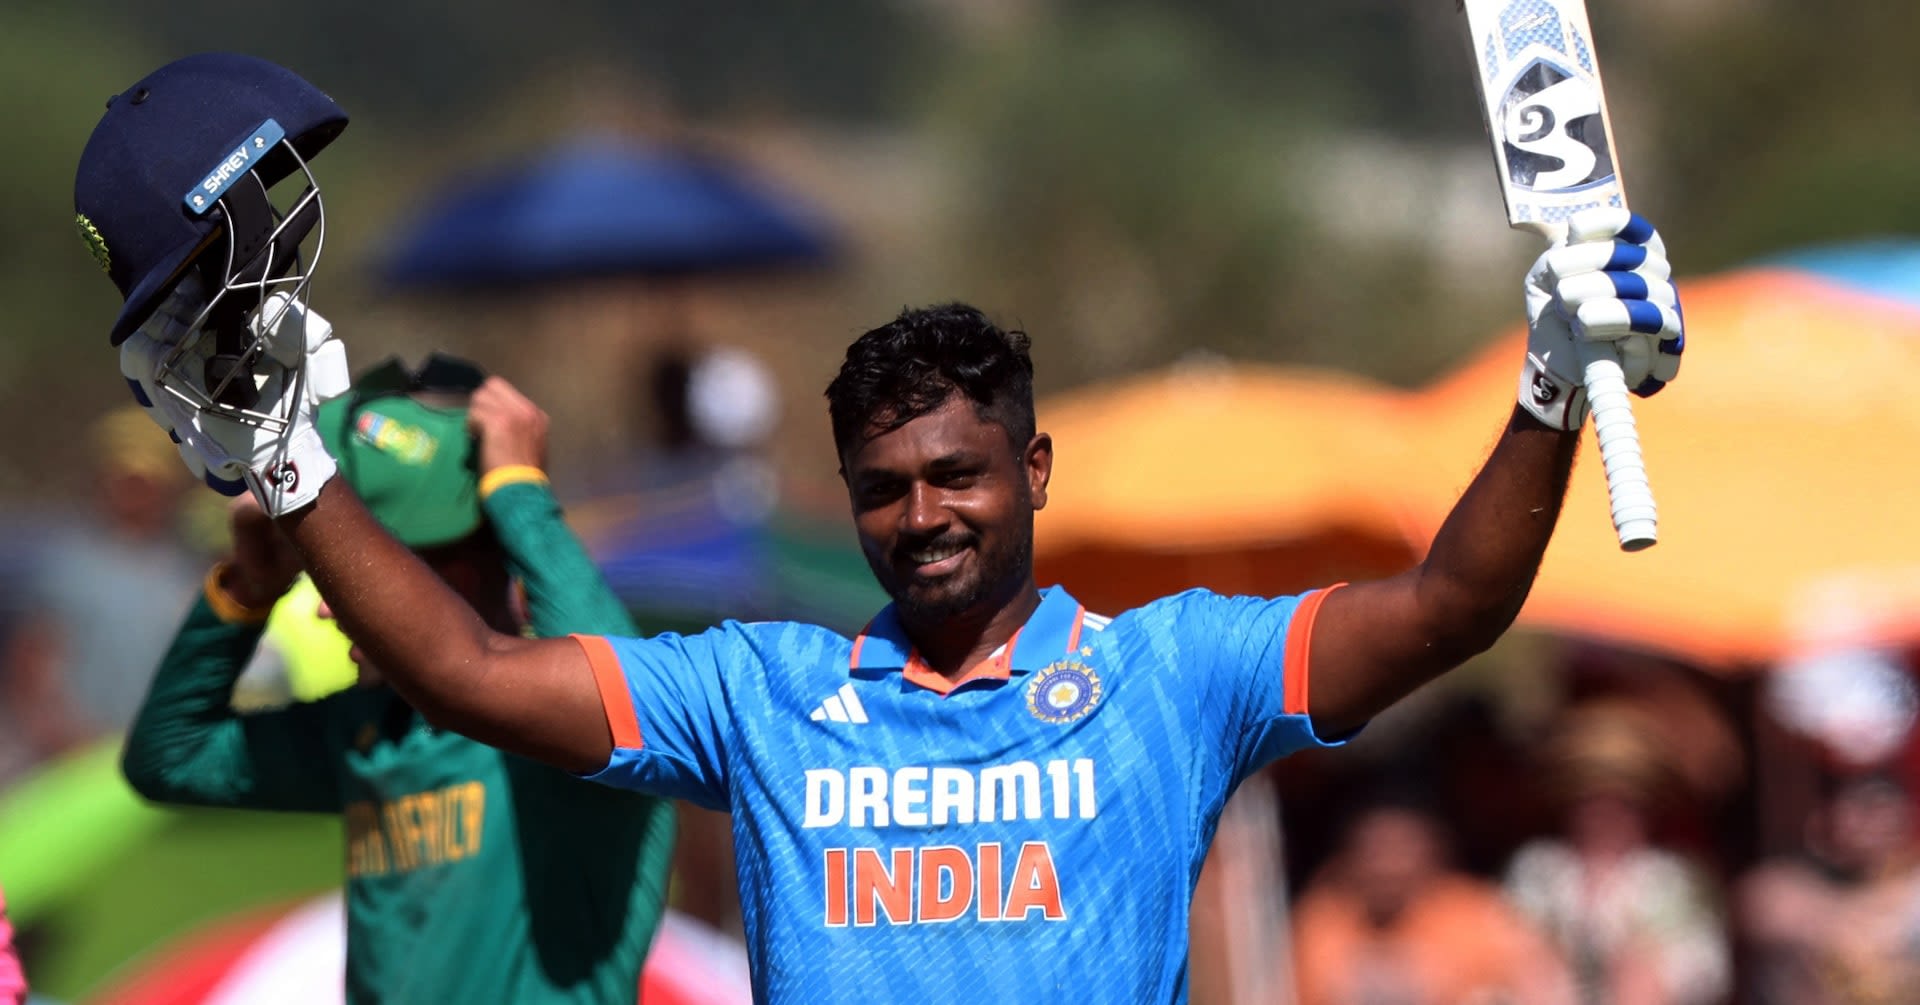 Sangakkara backs Royals' Samson to have a good run for India at World Cup